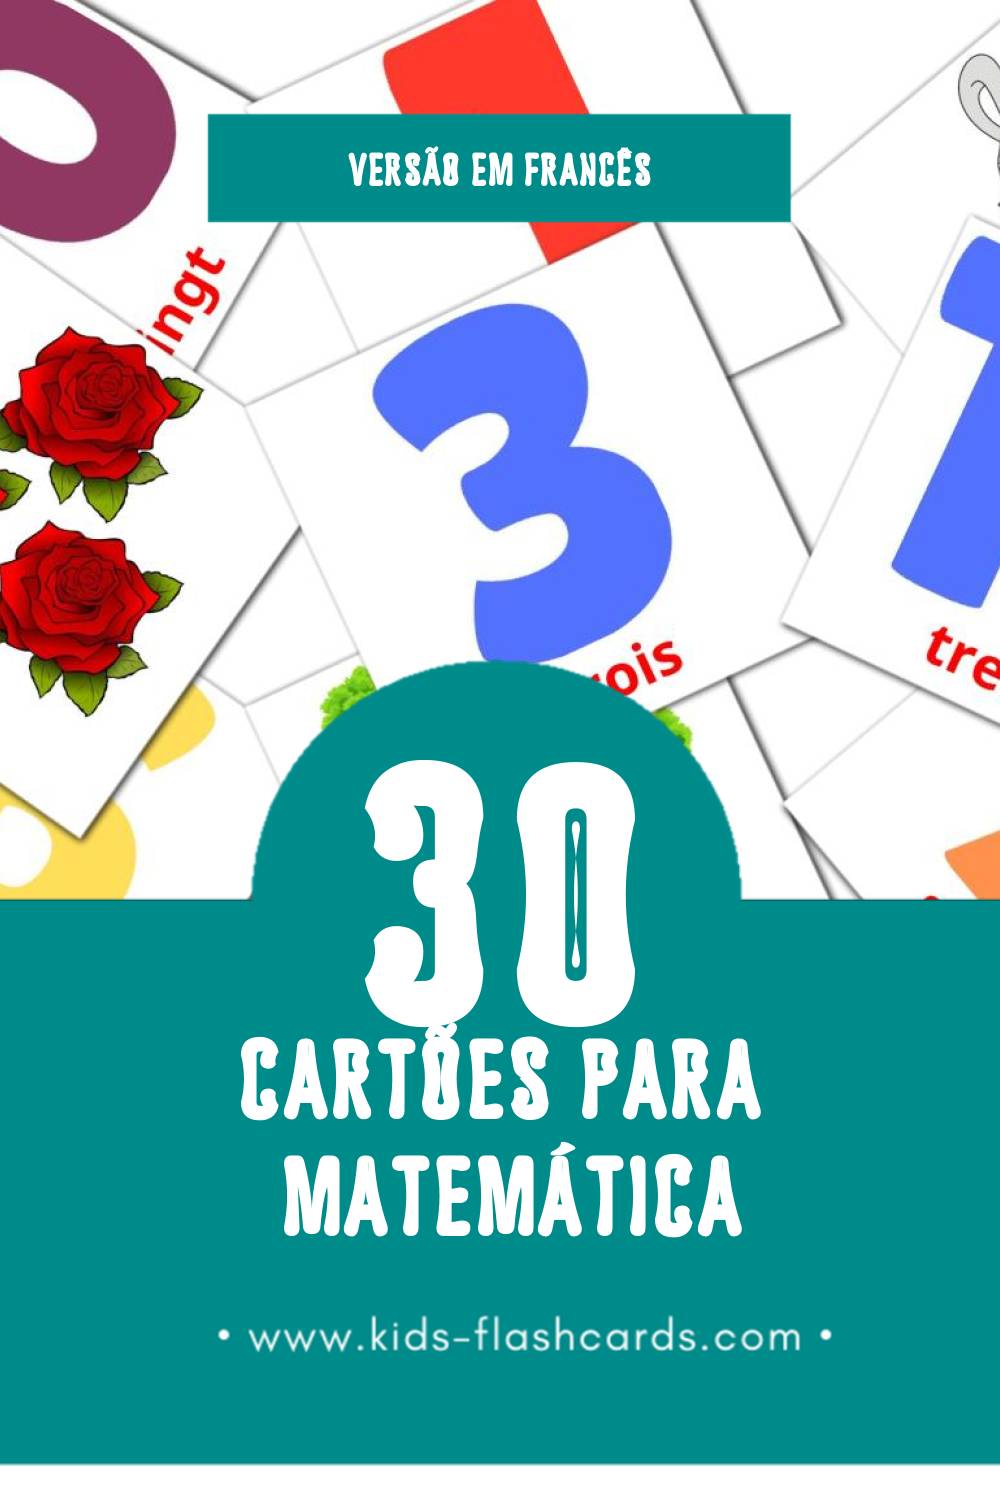 Flashcards de Math Visuais para Toddlers (30 cartões em Francês)